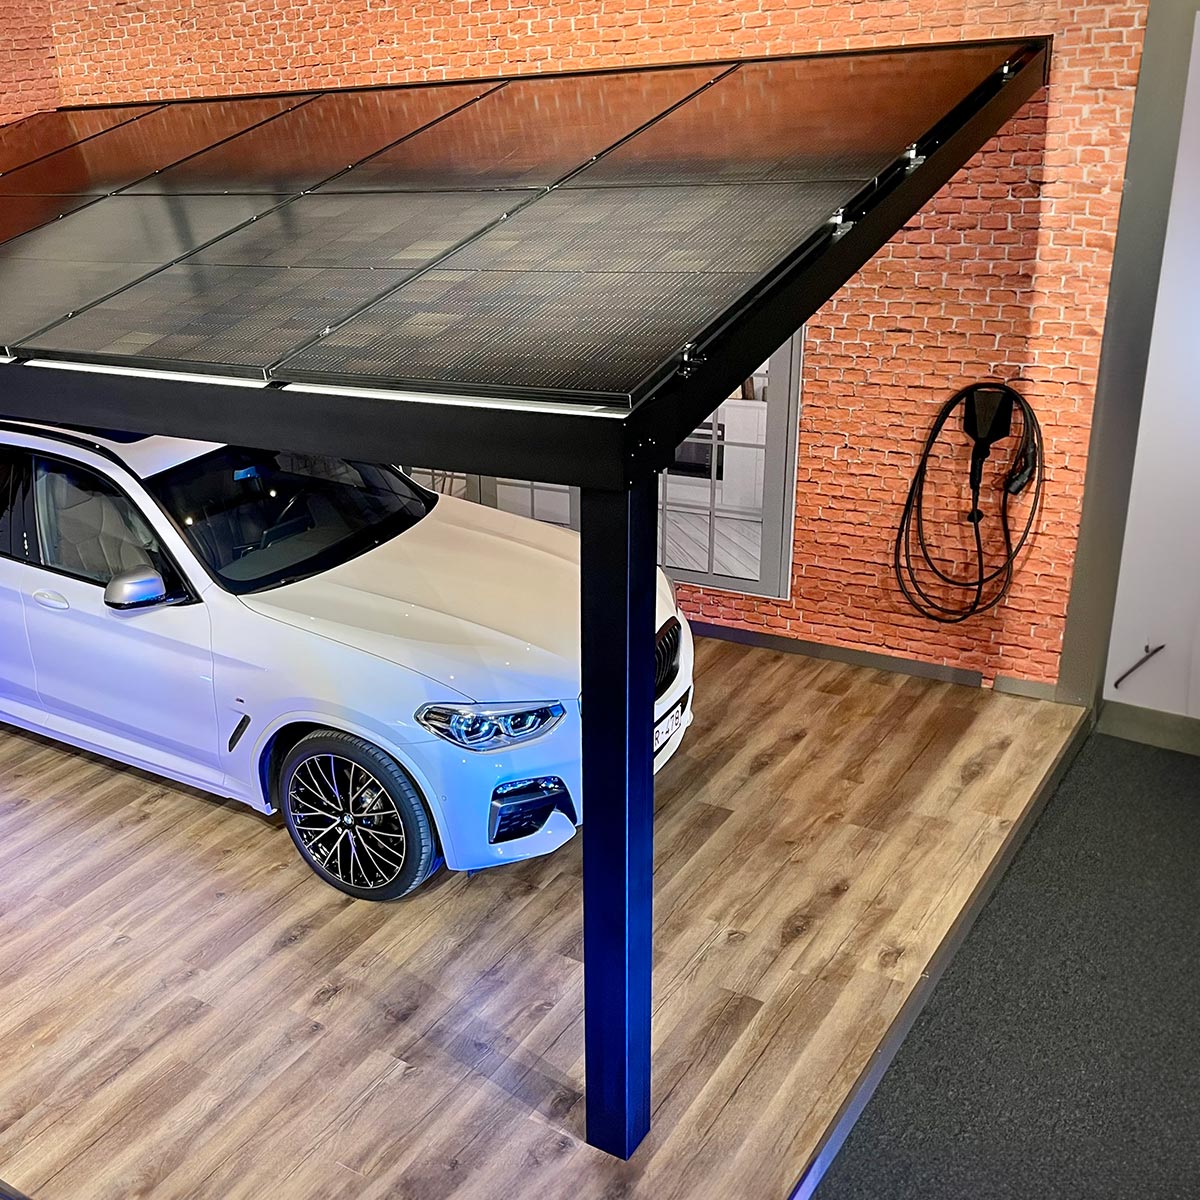 Carport aluminium solaire avec panneaux photovoltaïques sur le toit qui protège une voiture blanche électrique dans un showroom Verandair